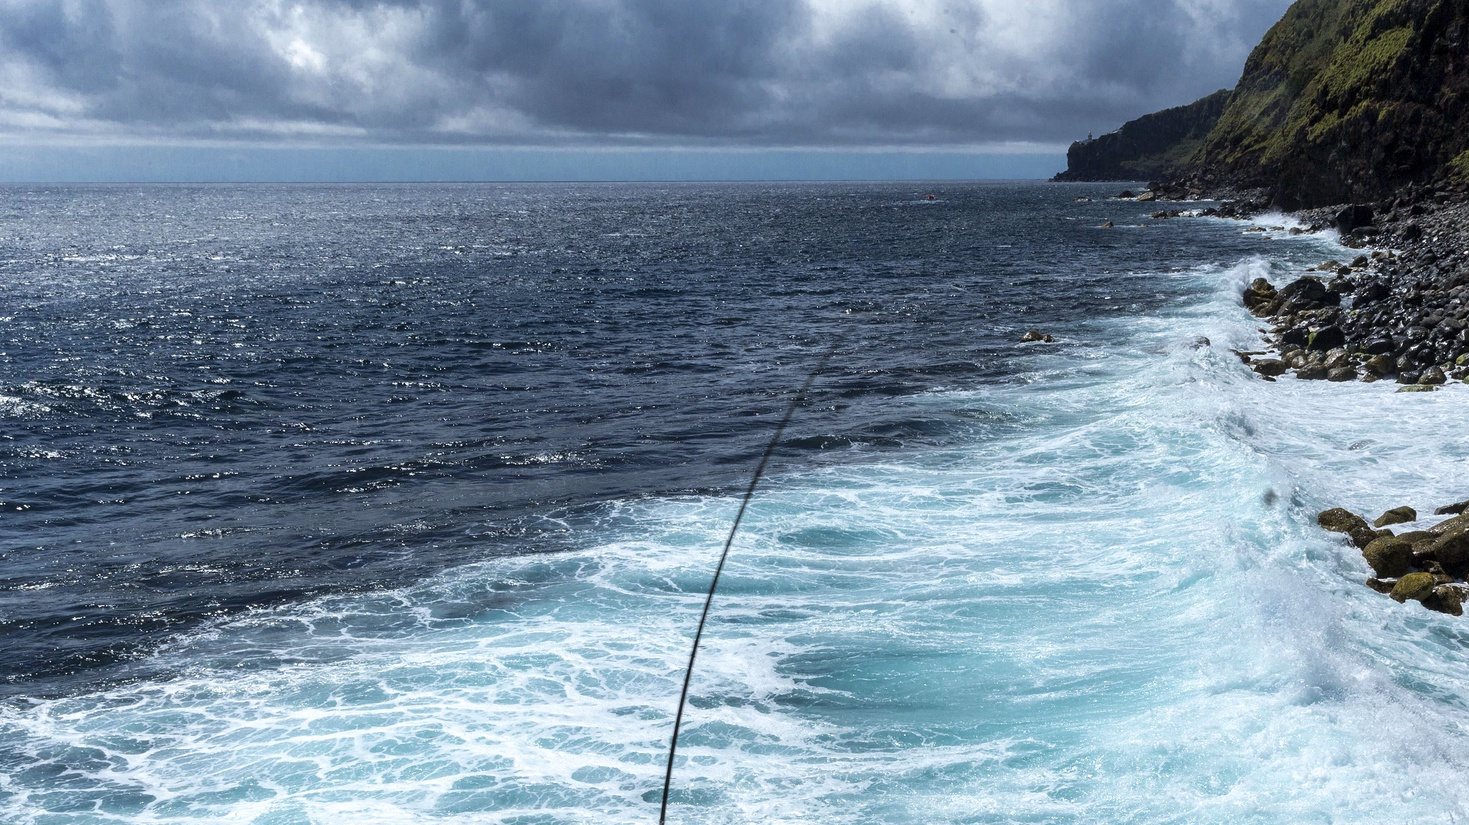 Um popular pesca numa praia do concelho do Nordeste, Ilha de São Miguel, Açores, 18 de maio de 2020.  O concelho do Nordeste foi último do país a sair da cerca sanitária por causa da covid-19. EDUARDO COSTA /LUSA